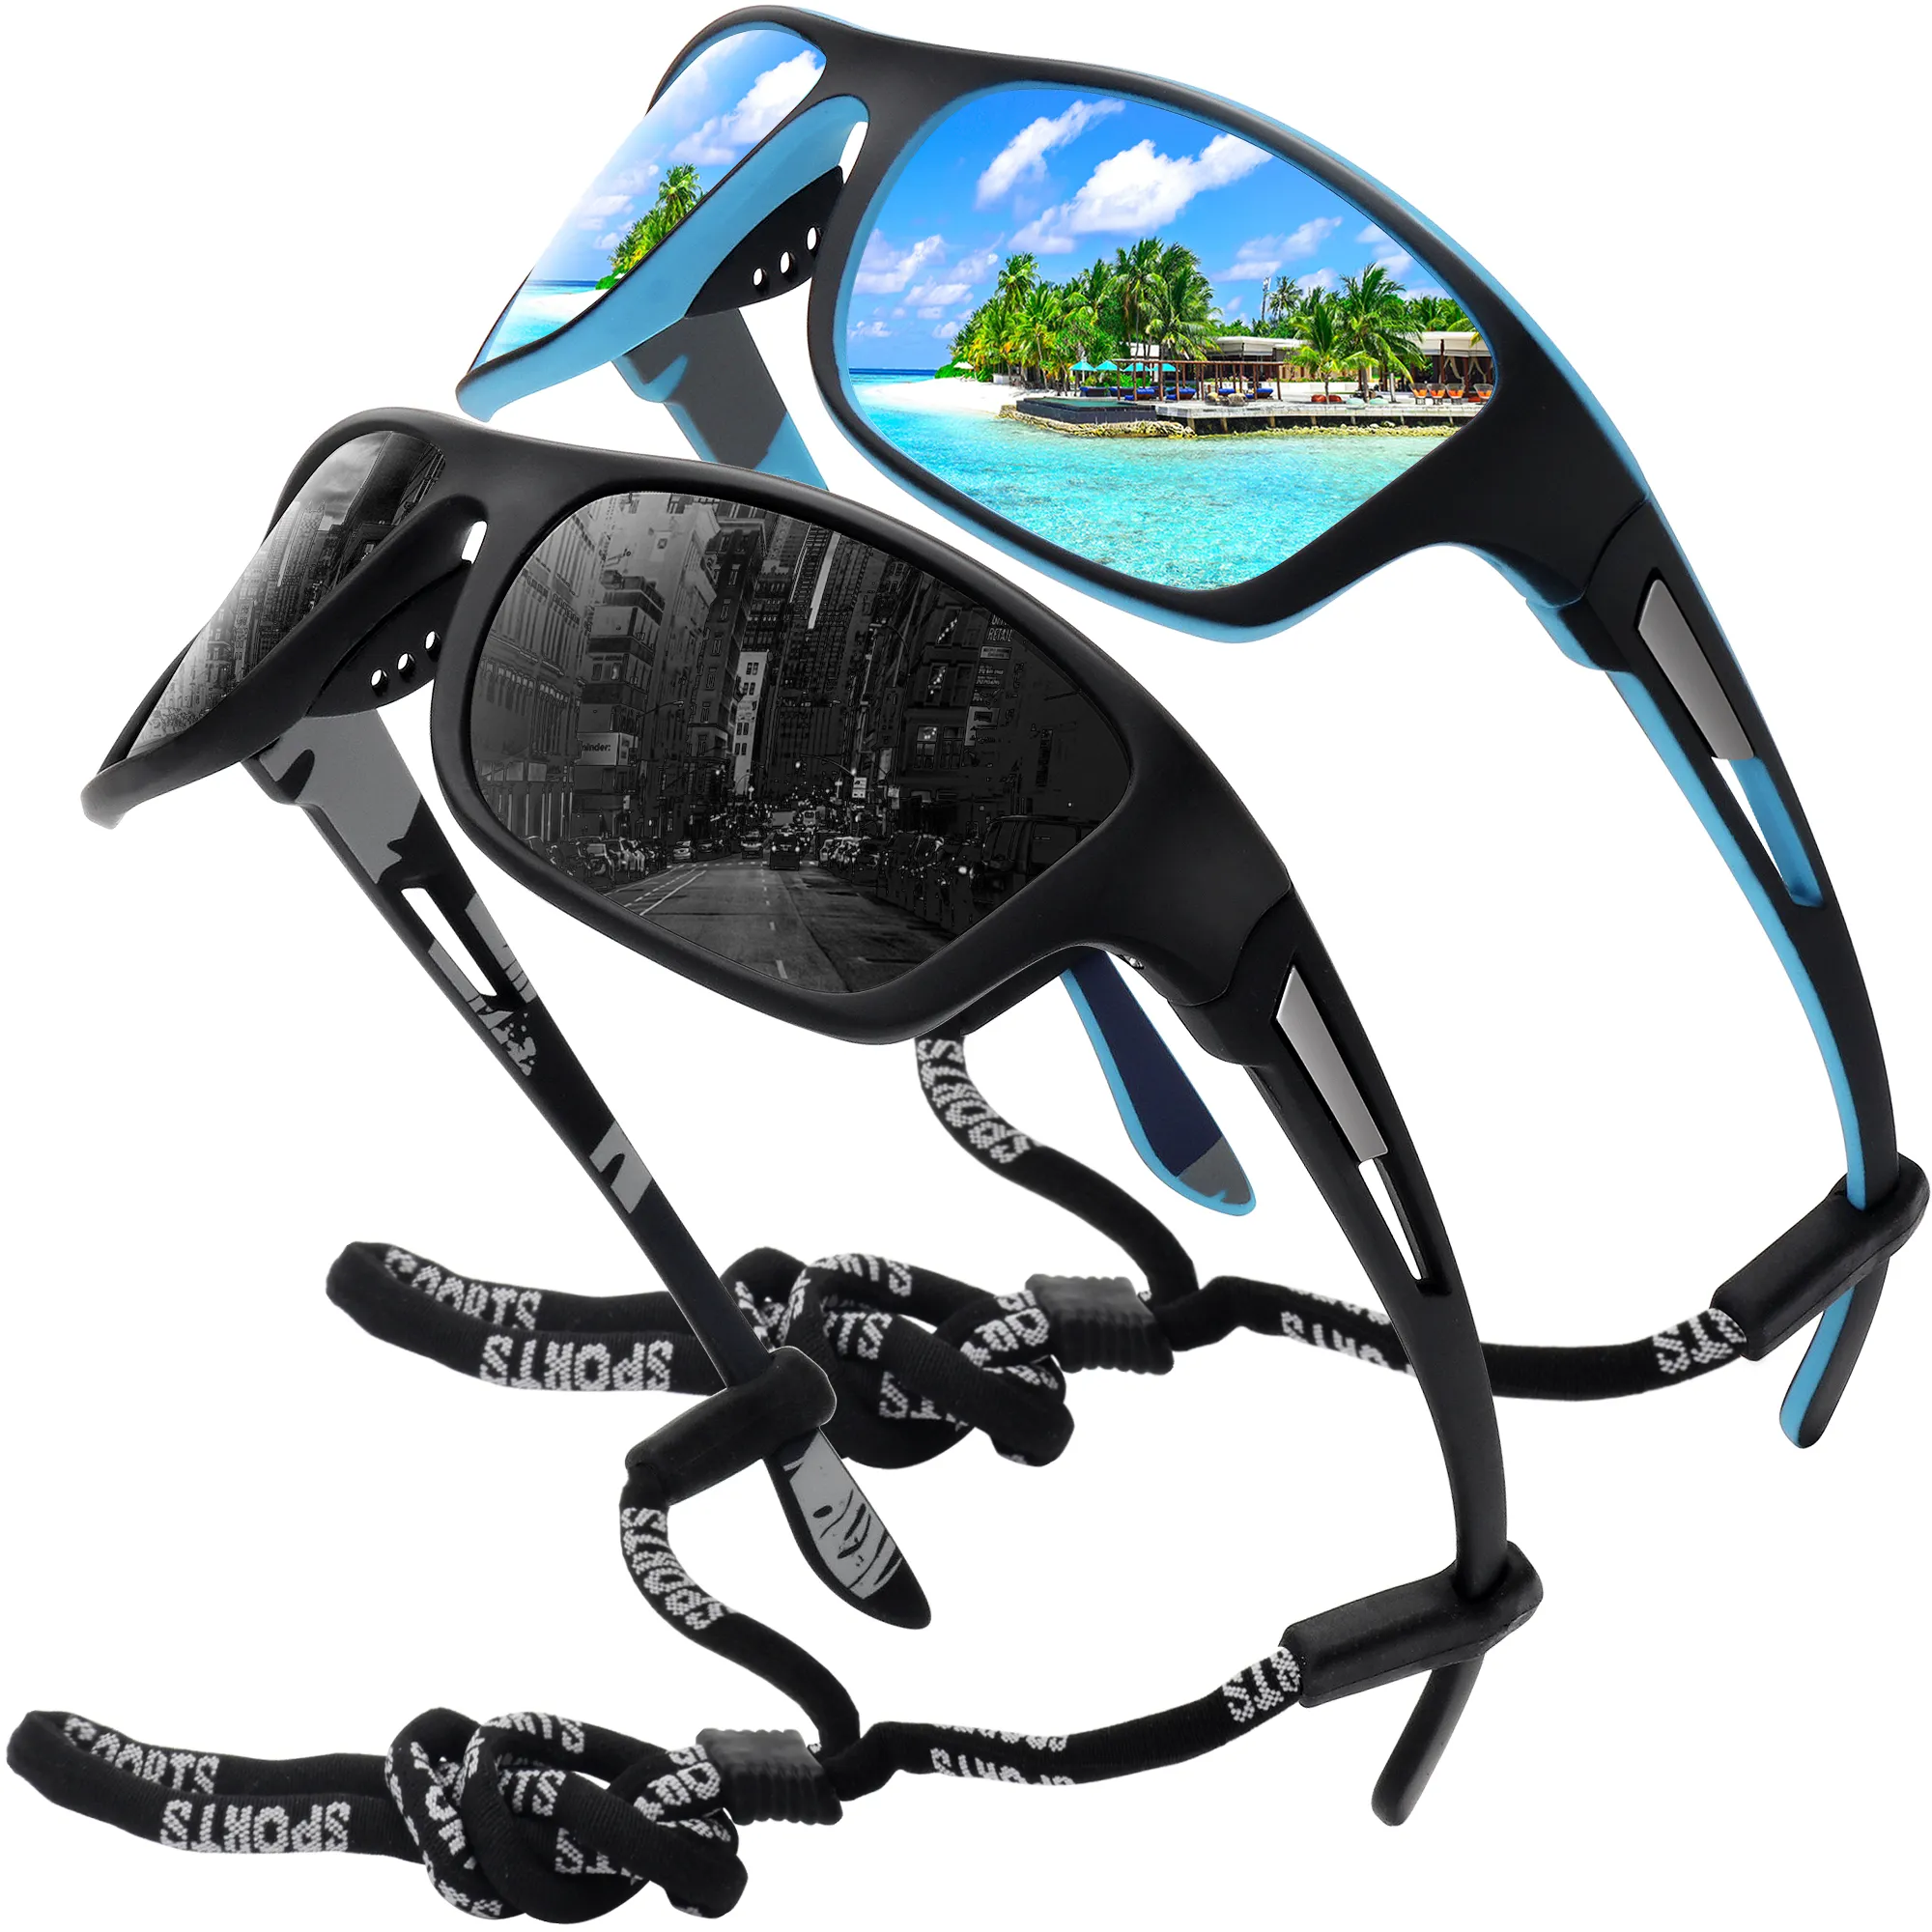 Венгенные поляризованные спортивные солнцезащитные очки для мужчин Рыболовные велосипедные бейсбол бегущий и вождение UV400 защита